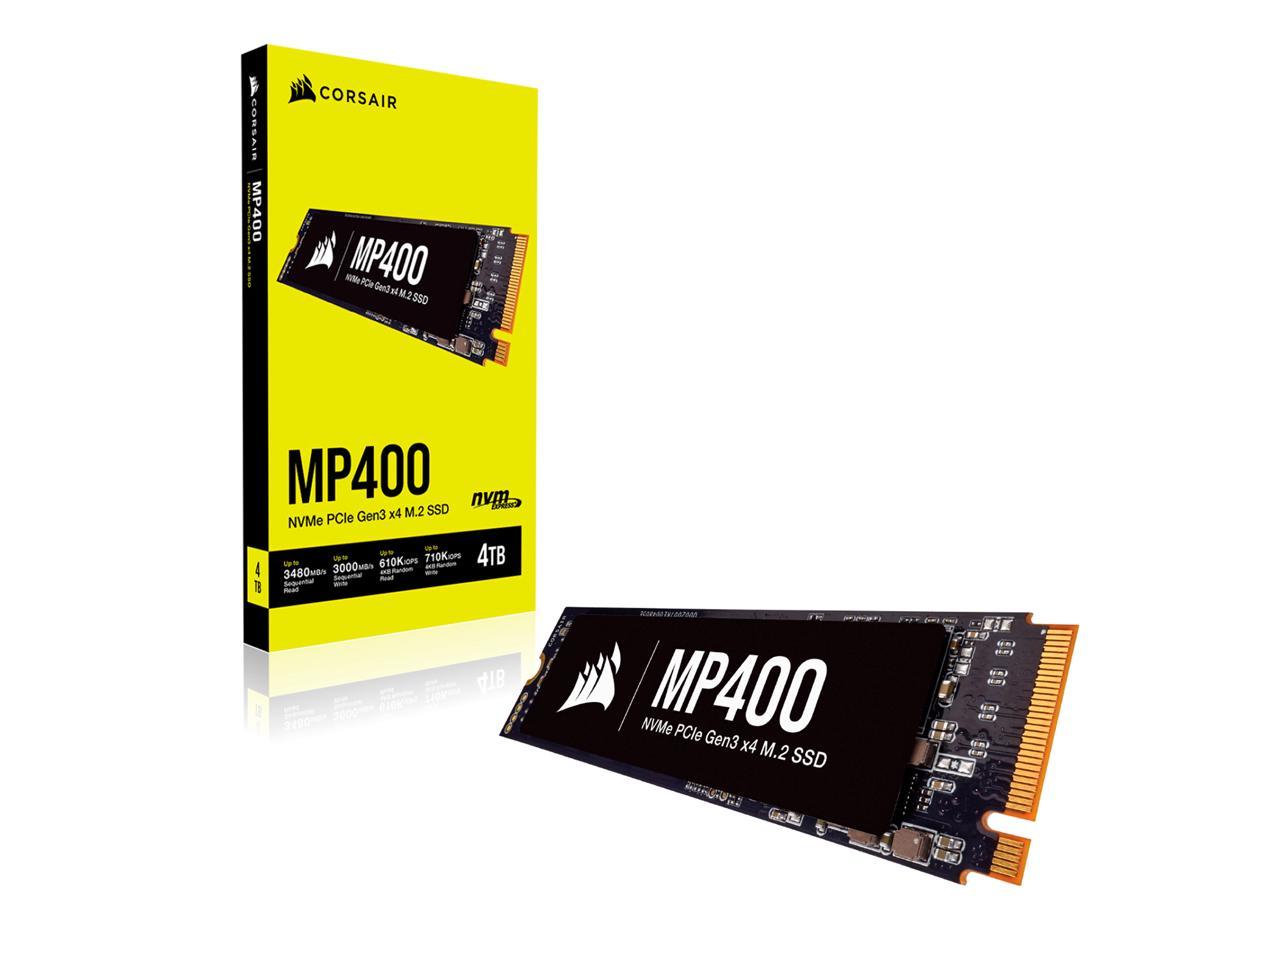 Schwarz Lesegeschwindigkeitenvon bis zu 3.480 MB/s sowie sequenziellen Schreibgeschwindigkeiten bis 3.000 MB/s, Hochdichter 3D QLC NAND Corsair MP400 4TB M.2 NVMe PCIe x4 Gen3 SSD 